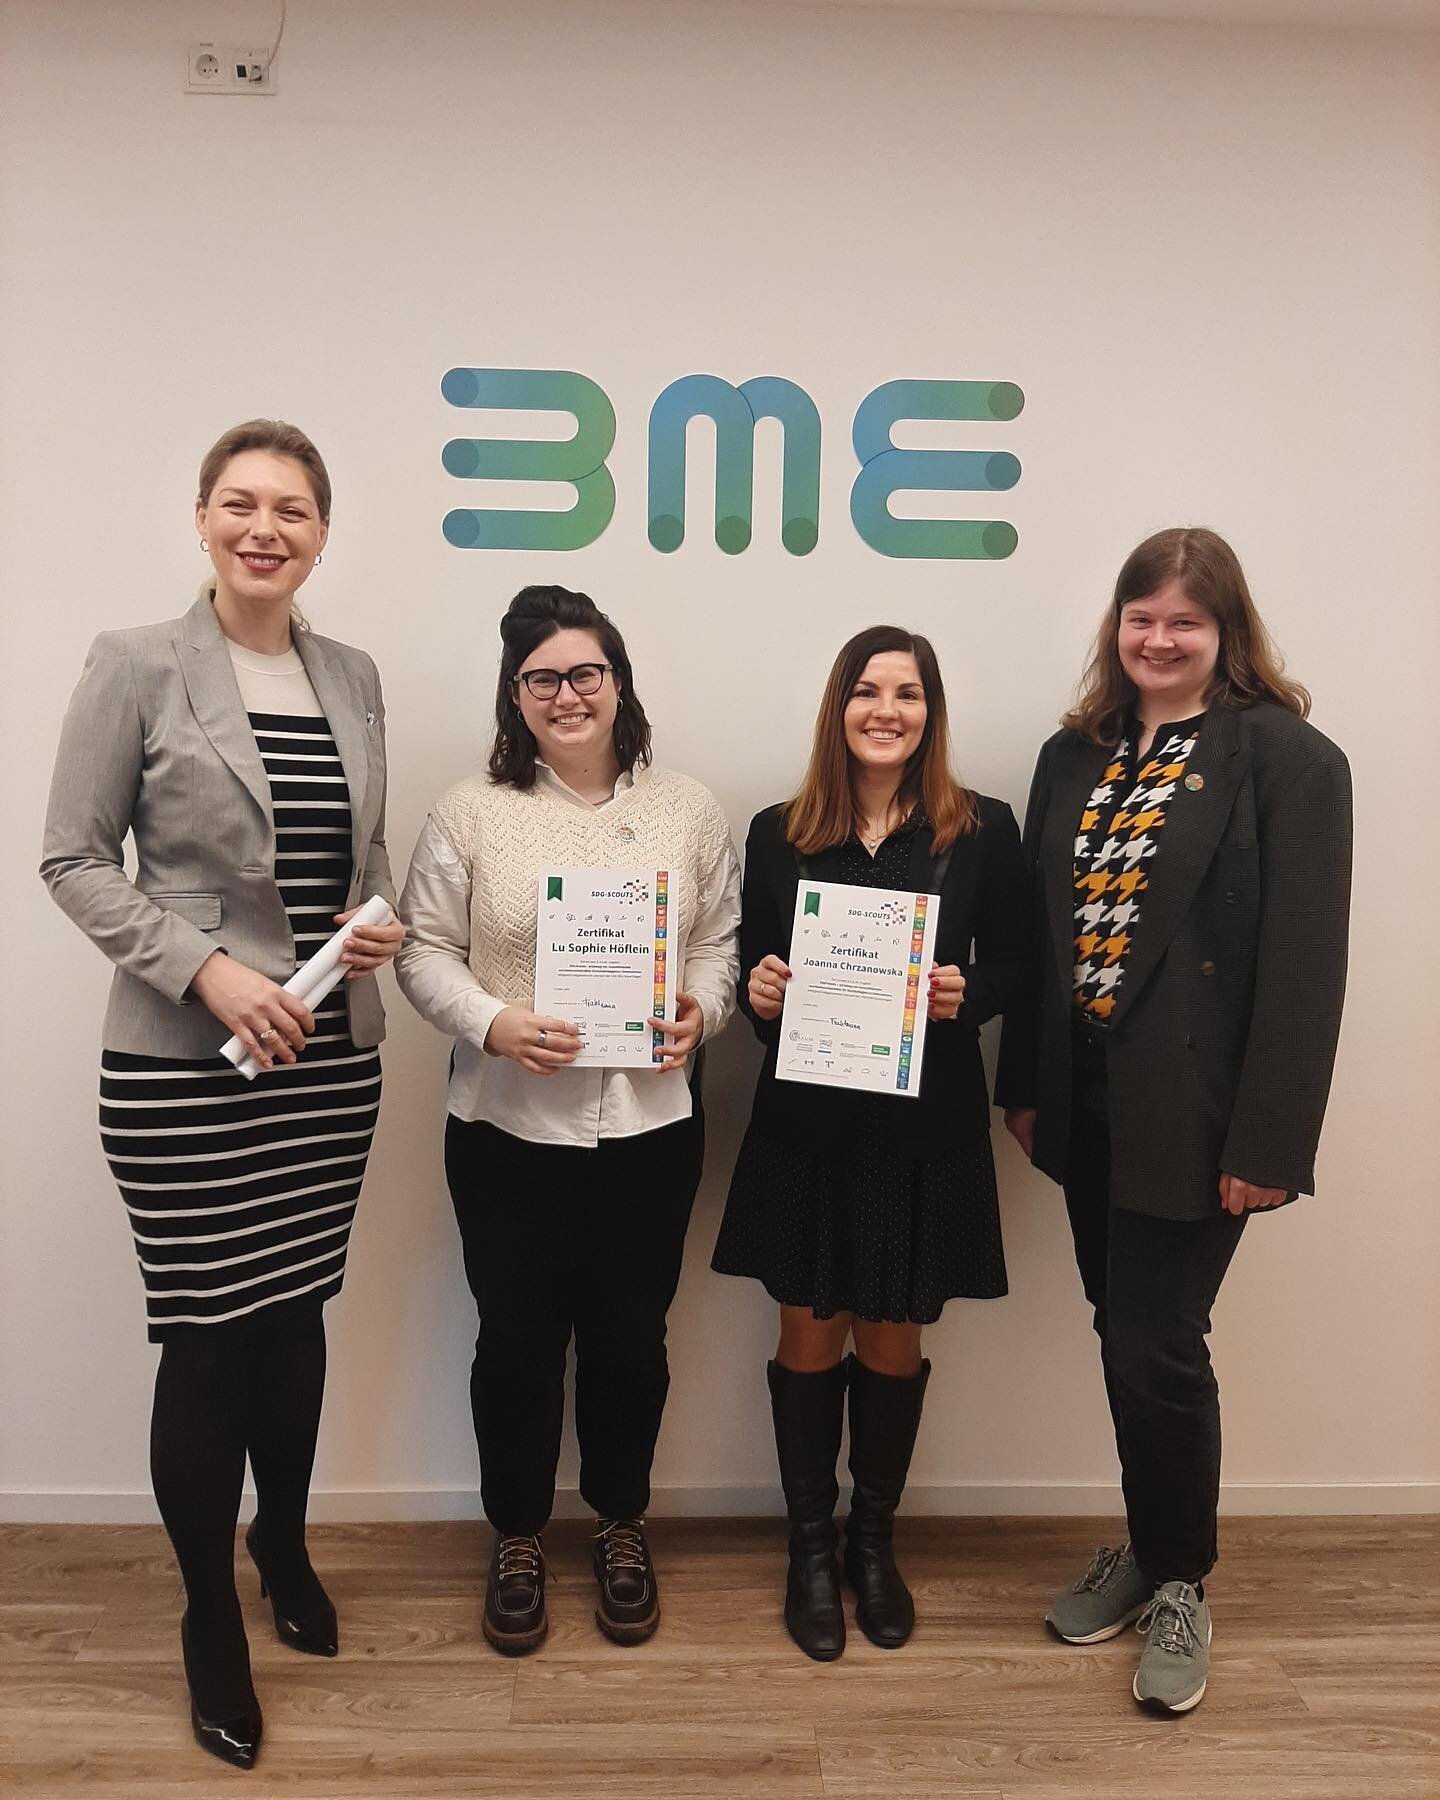 Unsere ersten SDG-Scouts Lu und Joanna von BME Marketing haben heute ihr Projekt vorgestellt und das erste Zertifikat erhalten! 😊💪
Ich freue mich sehr &uuml;ber eure Begeisterung und euer Engagement f&uuml;r #nachhaltigkeitinunternehmen und f&uuml;